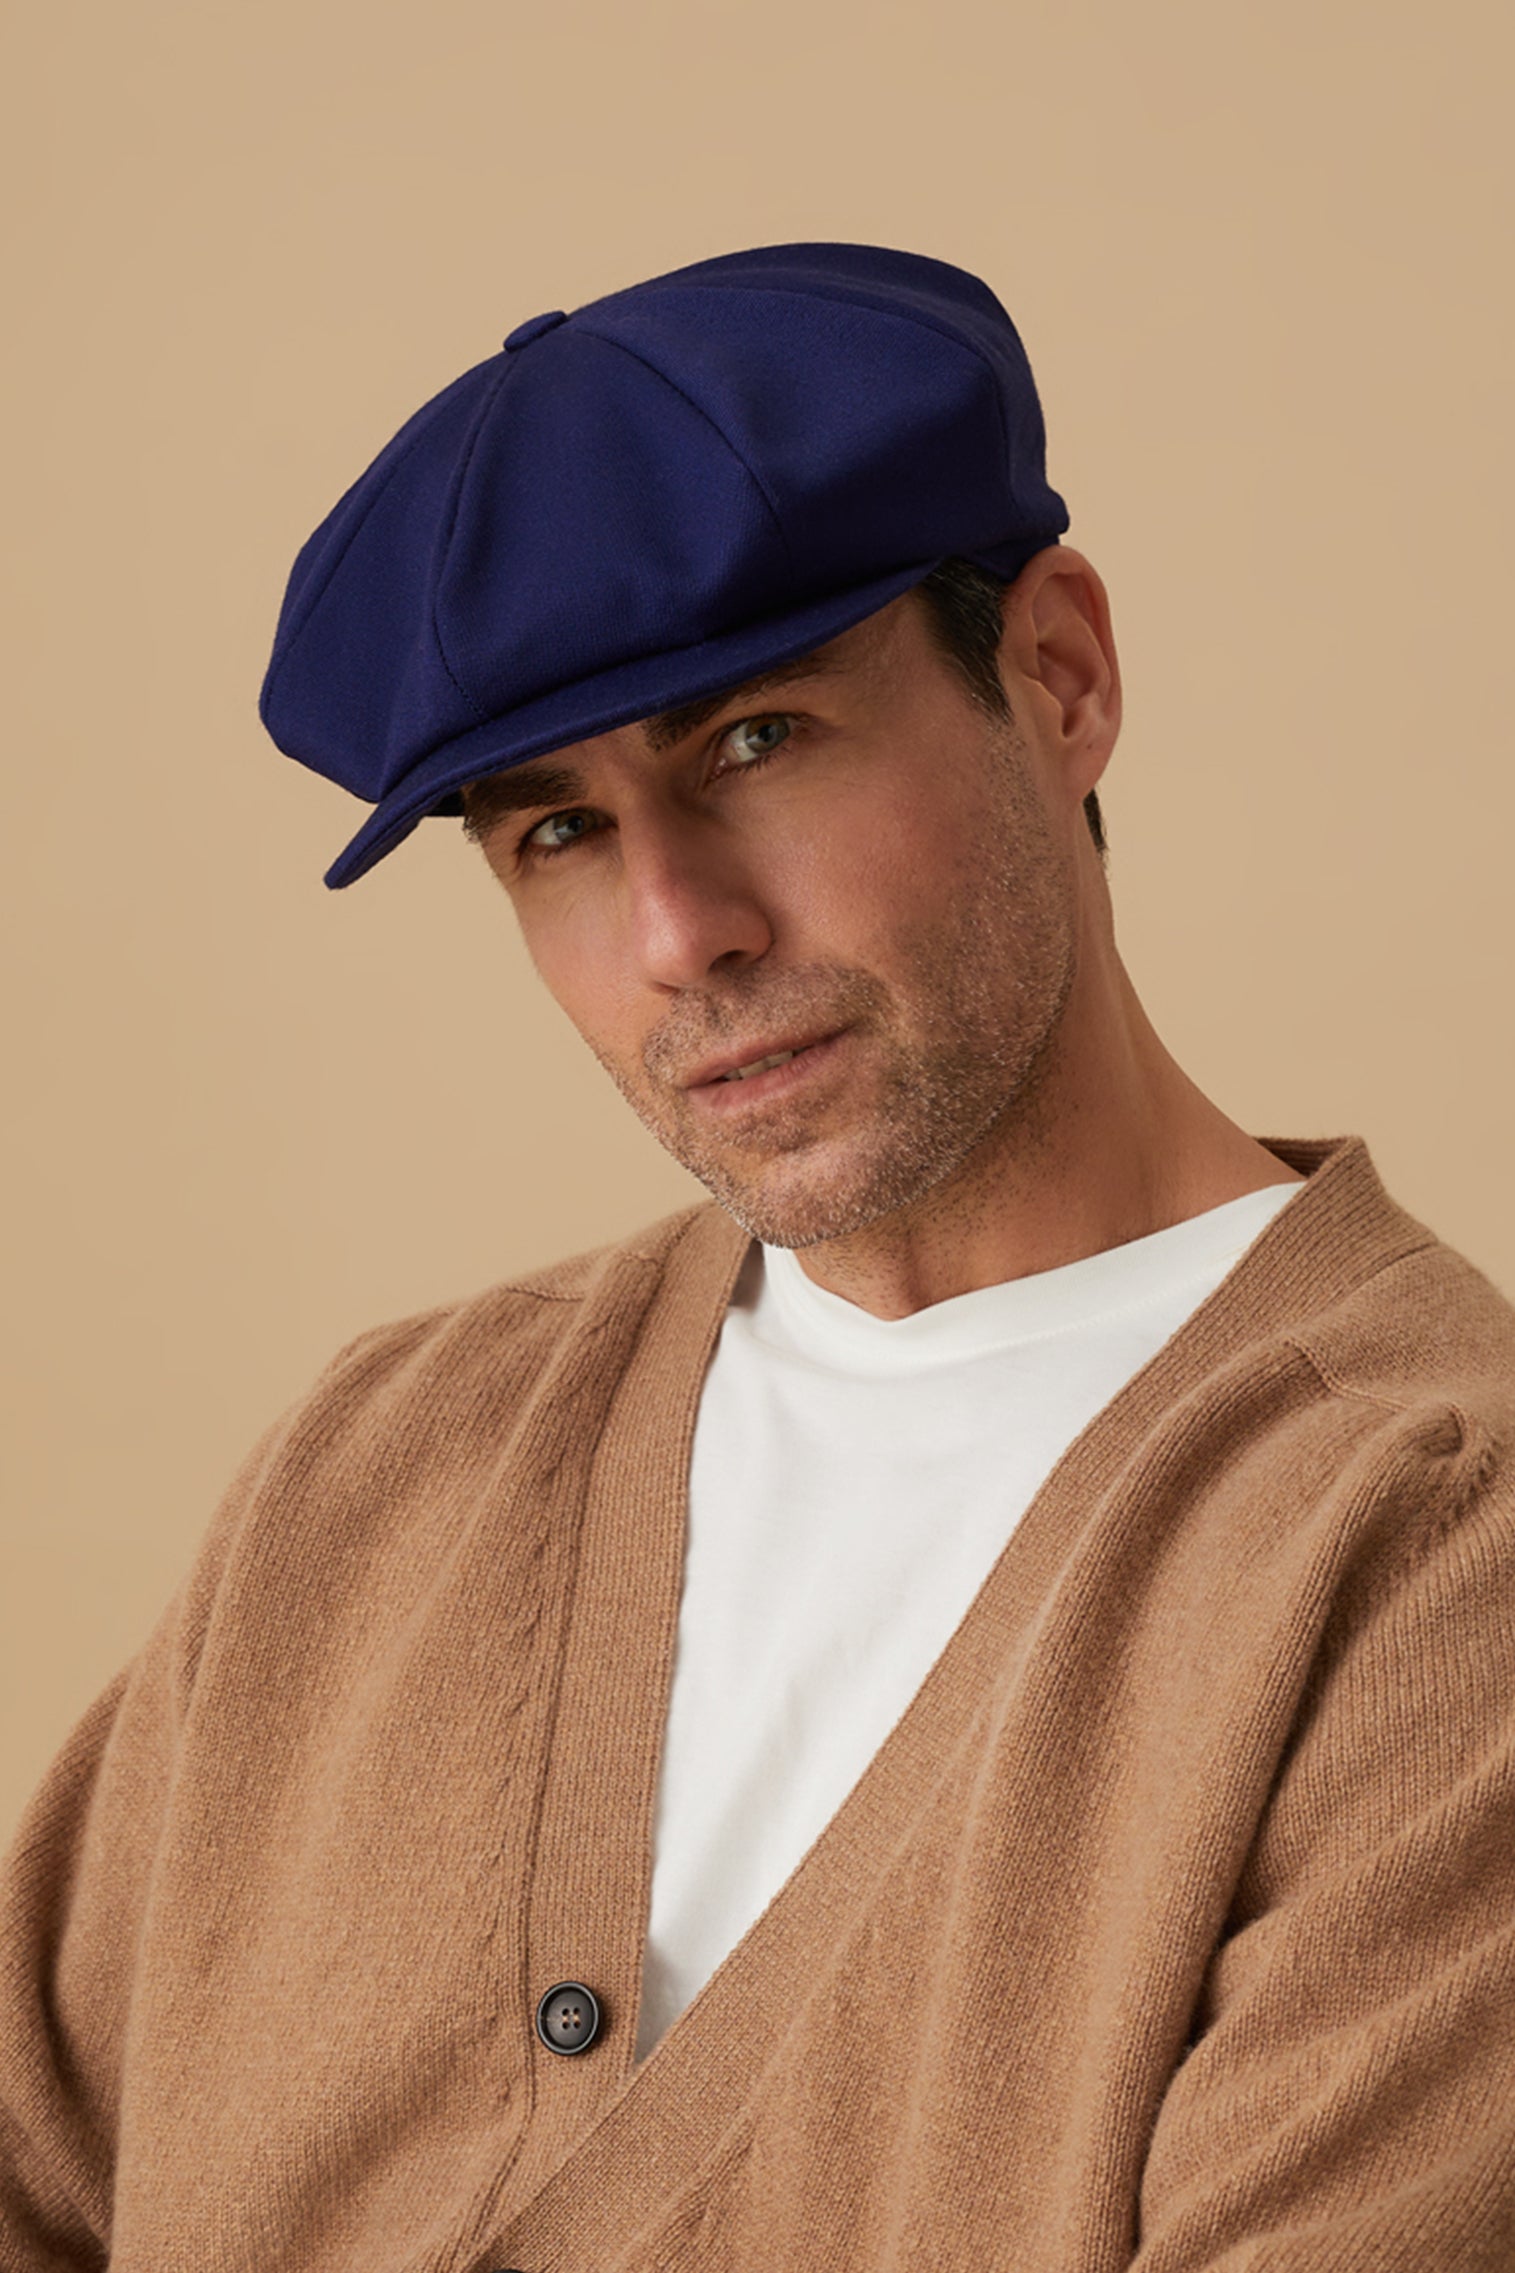 Tremelo Dark Blue Bakerboy Cap - New Season Men's Hats - Lock & Co. Hatters London UK